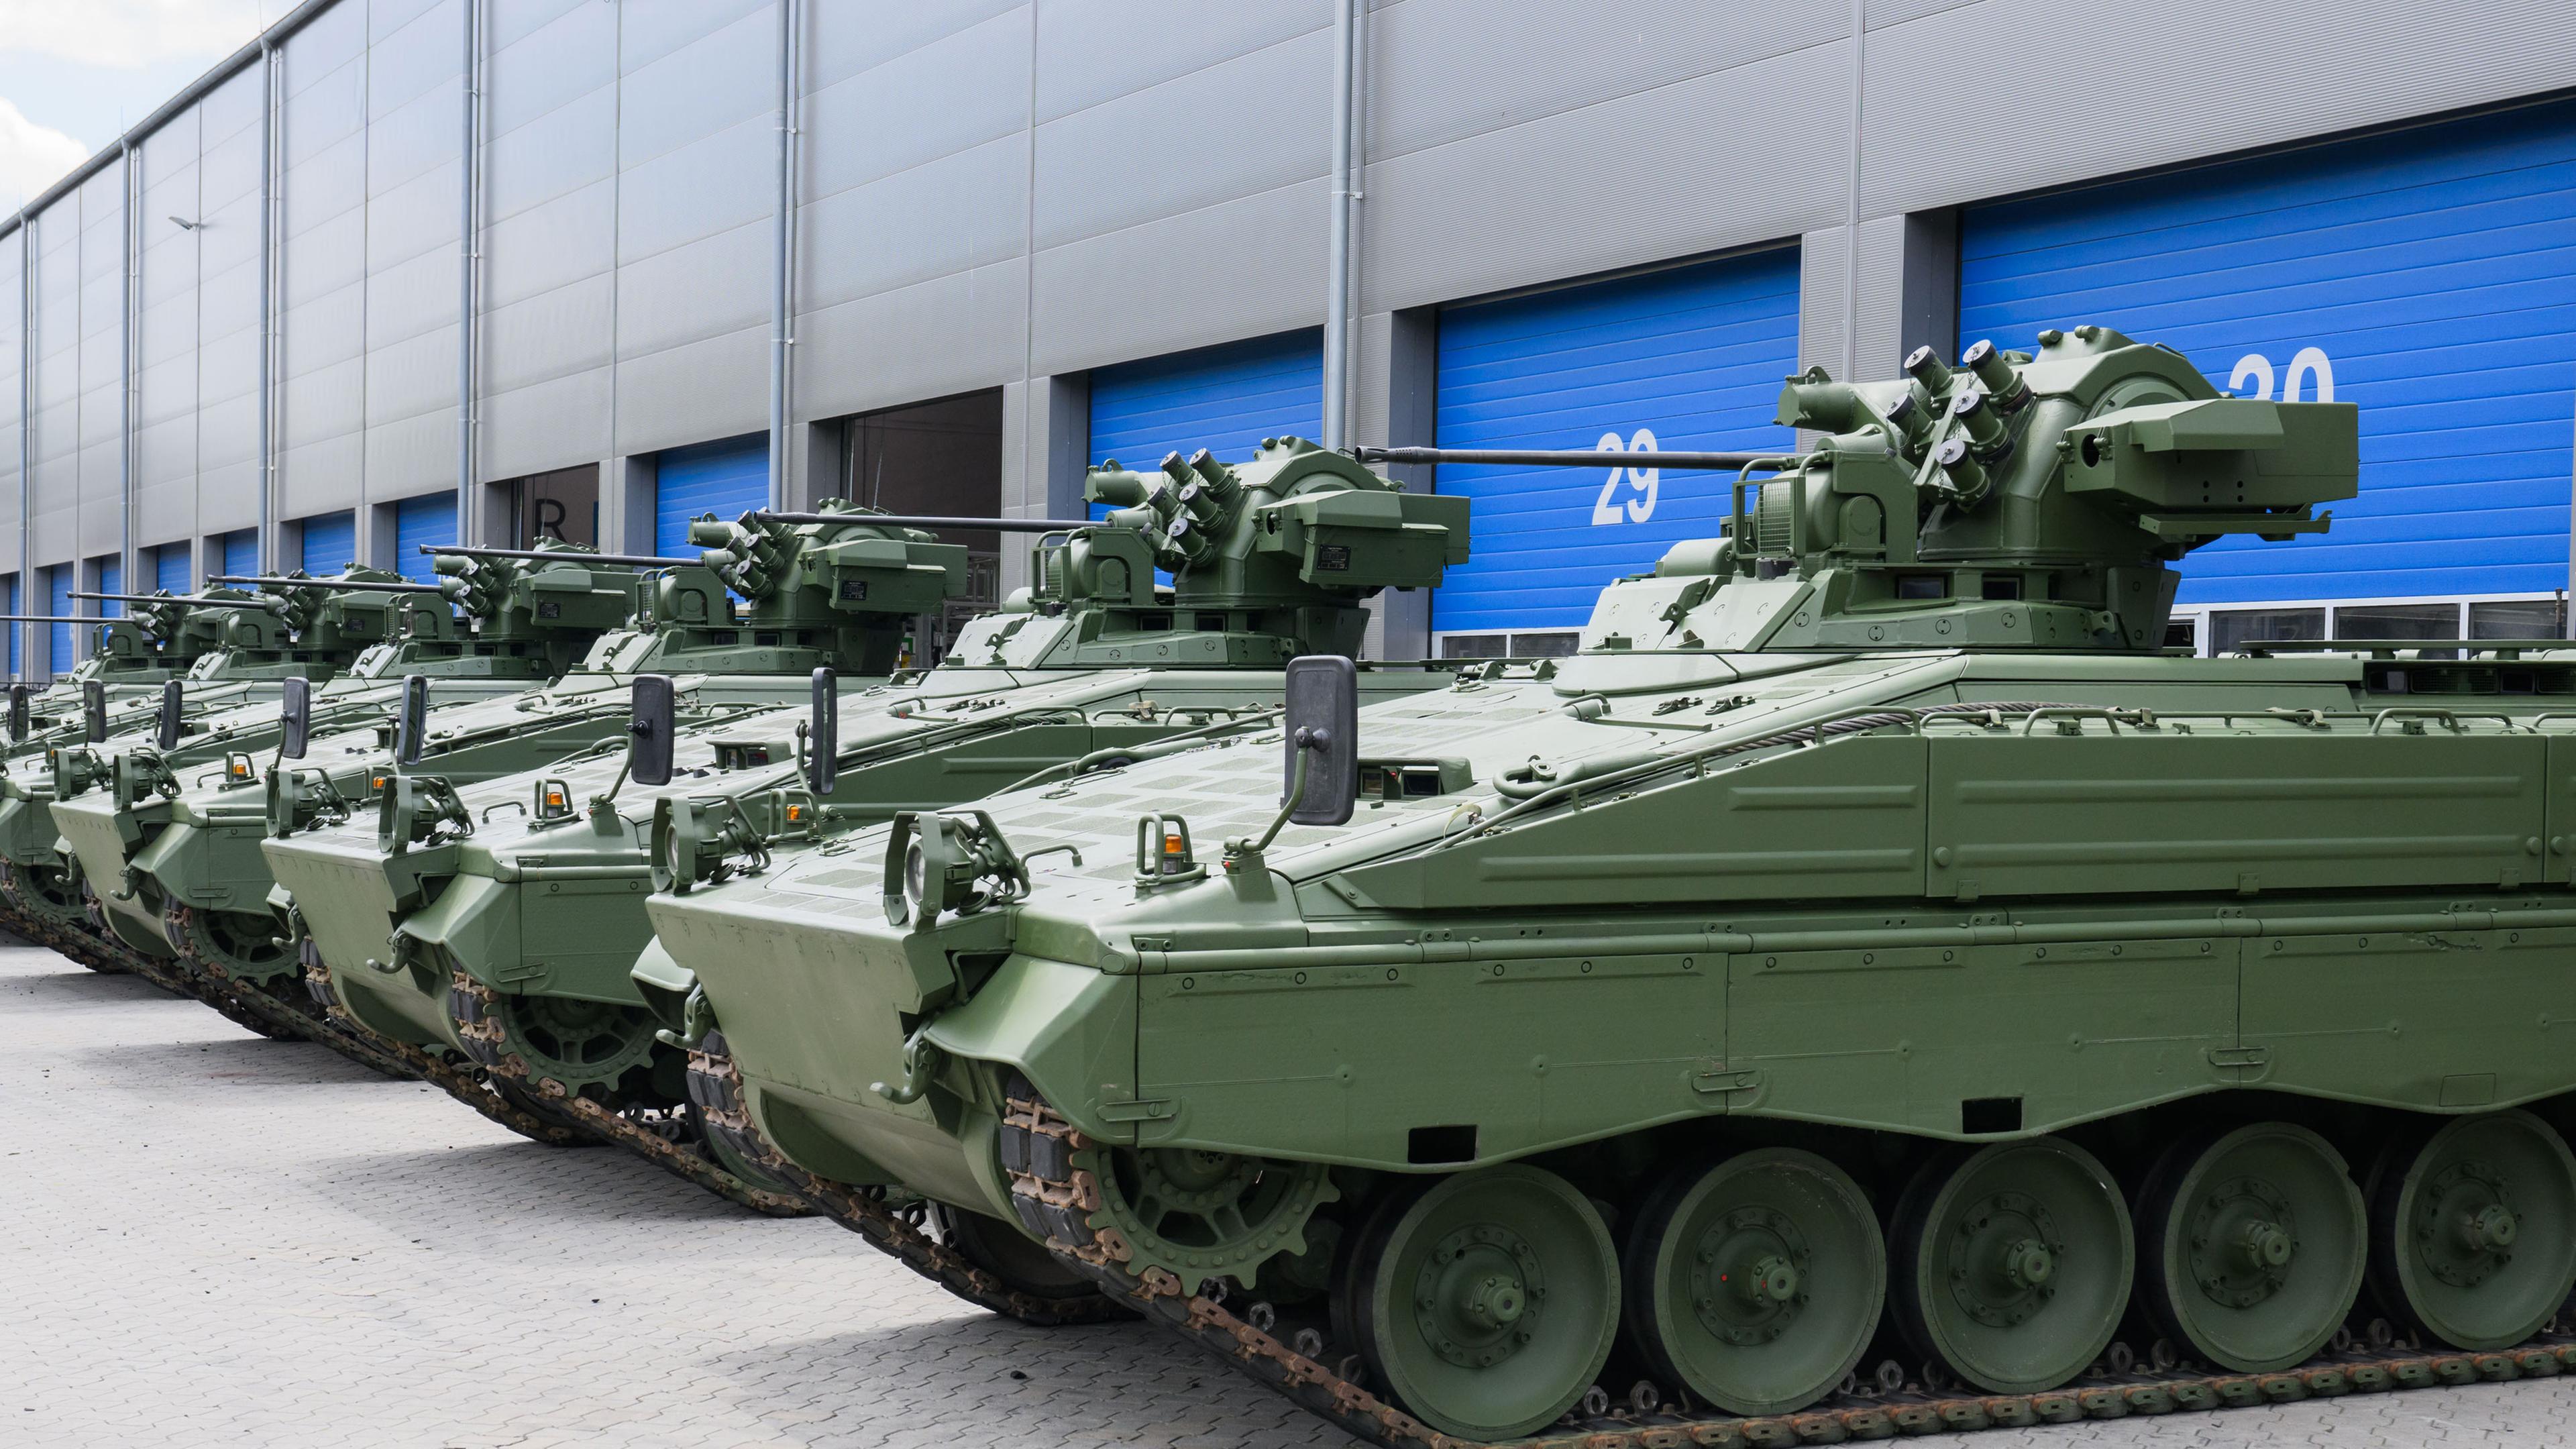 Wieder aufbereiteten Marder-Schützenpanzer stehen bei einer Führung durch das Rheinmetall-Werk anlässlich der Sommerreise des niedersächsischen Wirtschaftsministers vor einer Halle.